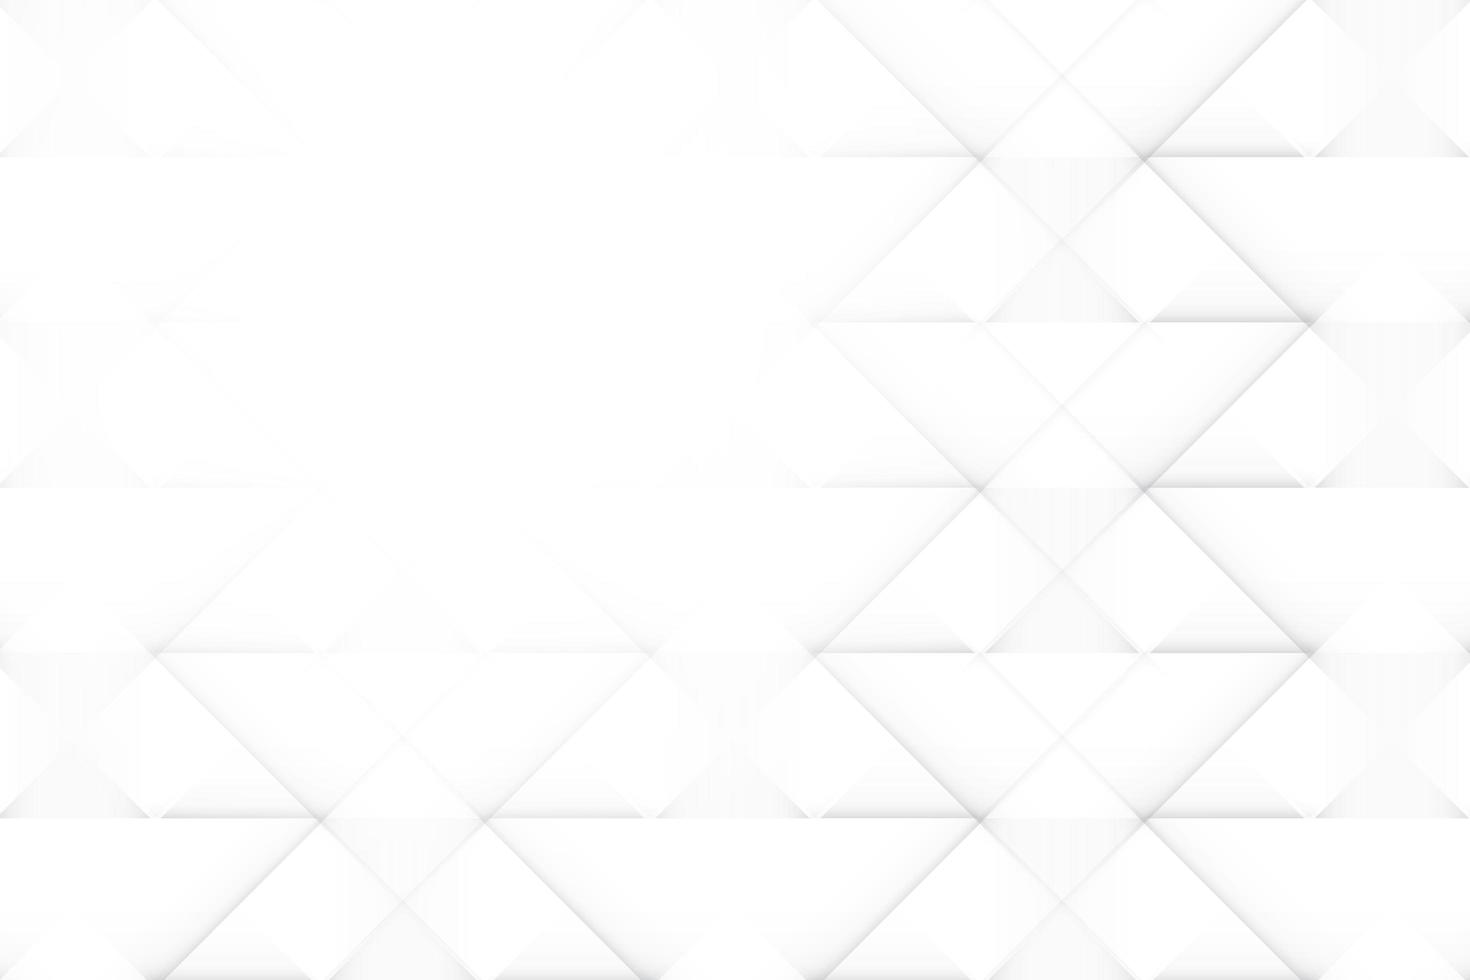 couleur blanche et grise abstraite, arrière-plan design moderne avec forme géométrique. illustration vectorielle. photo